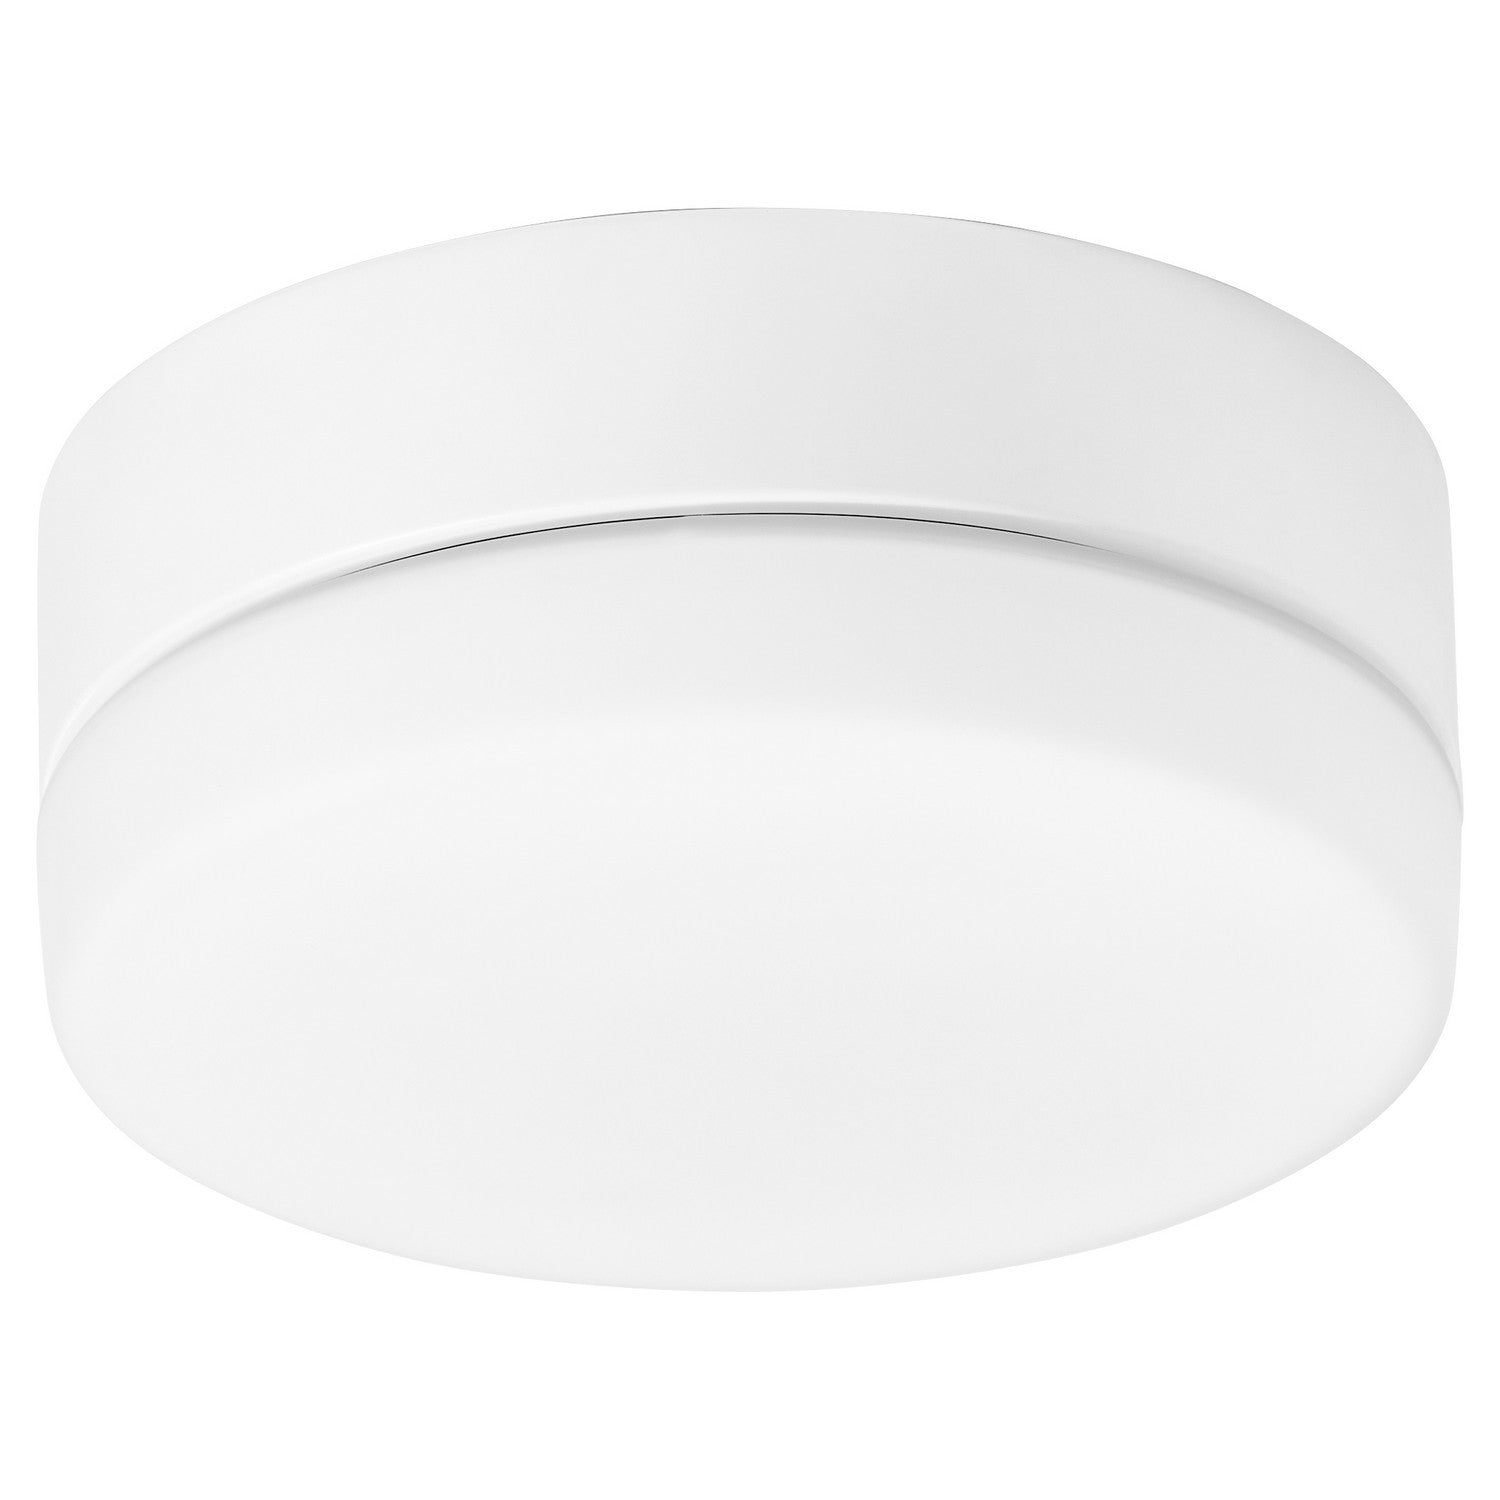 Oxygen ALLEGRO 3-9-119-6 Ceiling Fan LED Light Kit - White